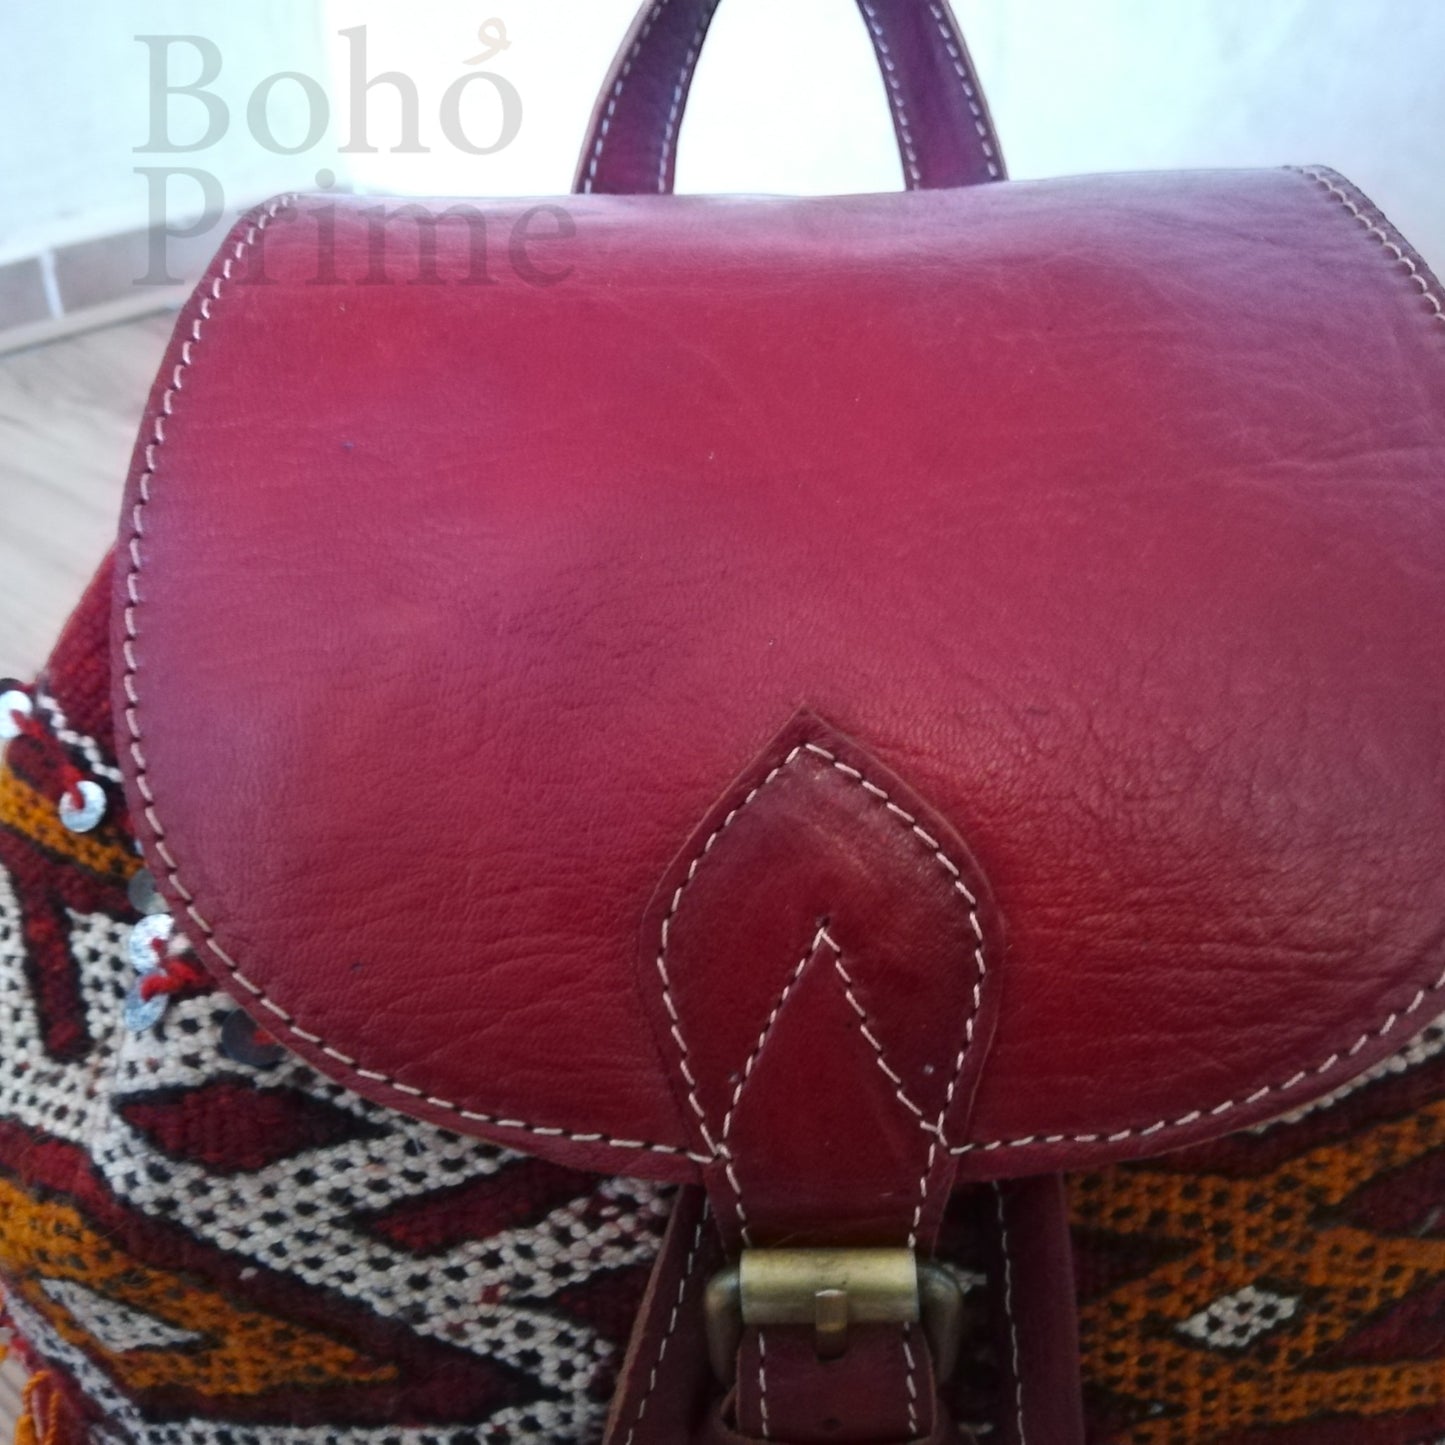 Handmade Moroccan Backpack Leather Woven Kilim Shoulder Bag, Travel Bag Ethnic, Berber Bohemian Backpack, Vintage Unique Stylish Handbag